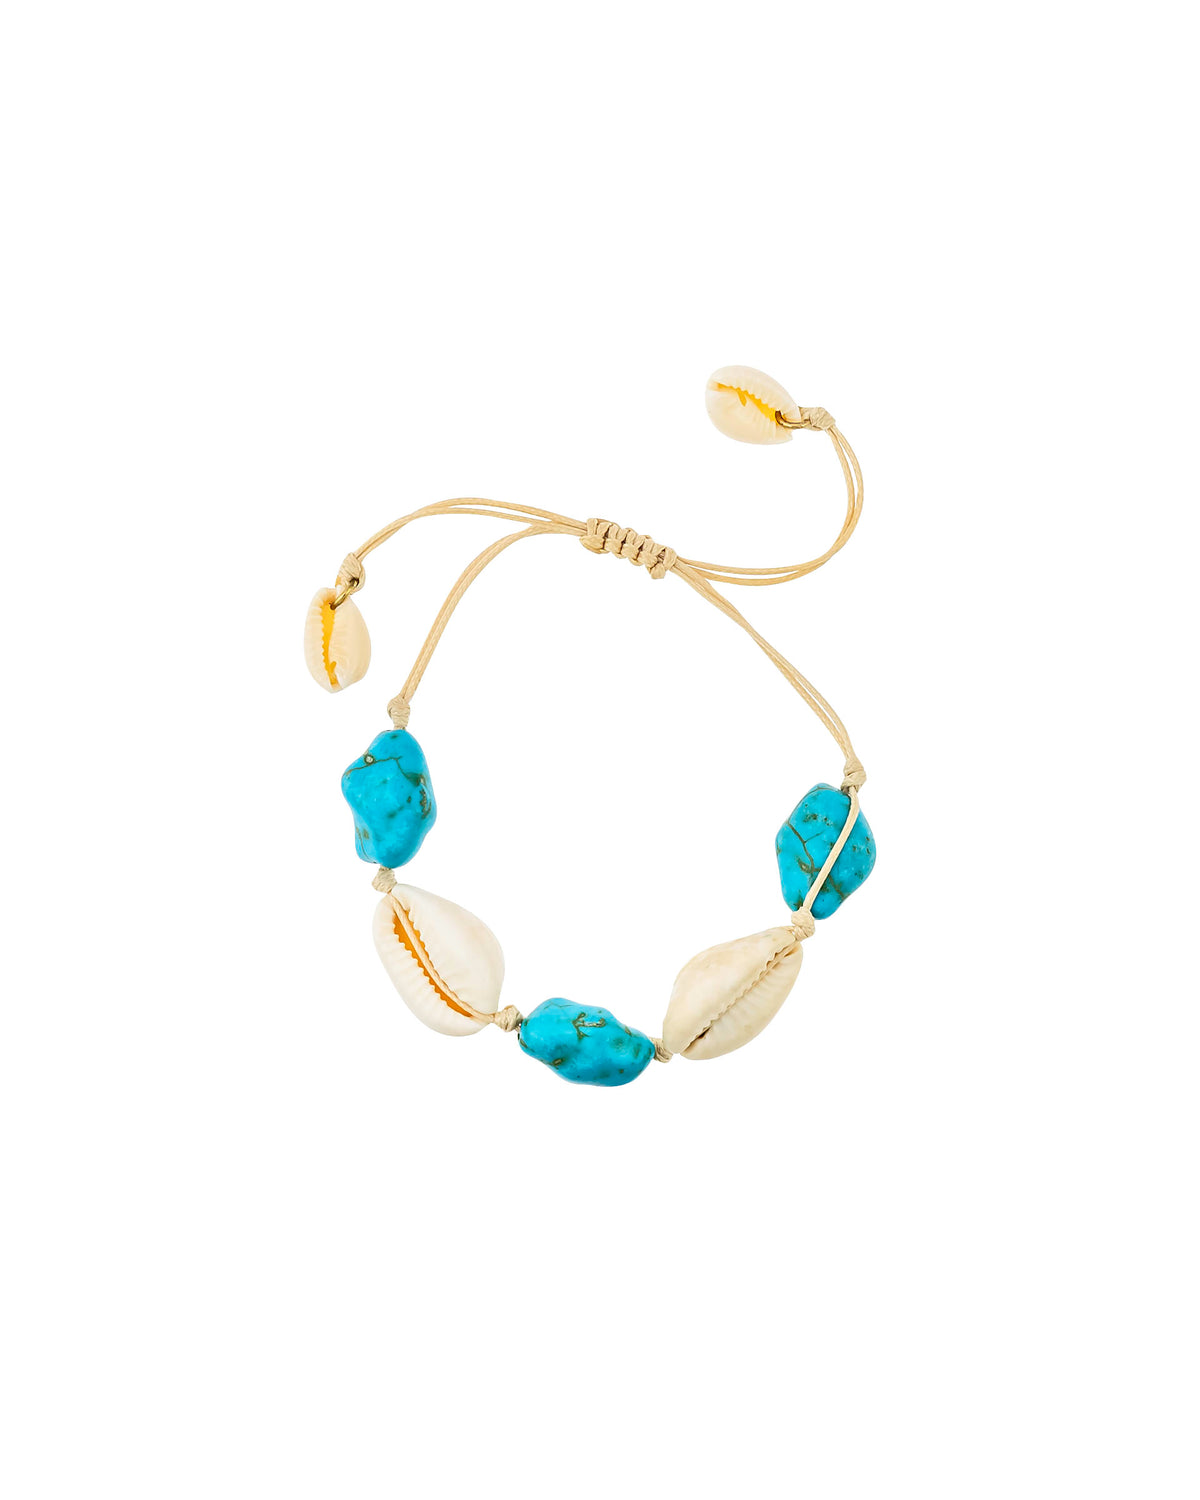 Dauplaise Jewelry - Tied-up Macrame Bracelet